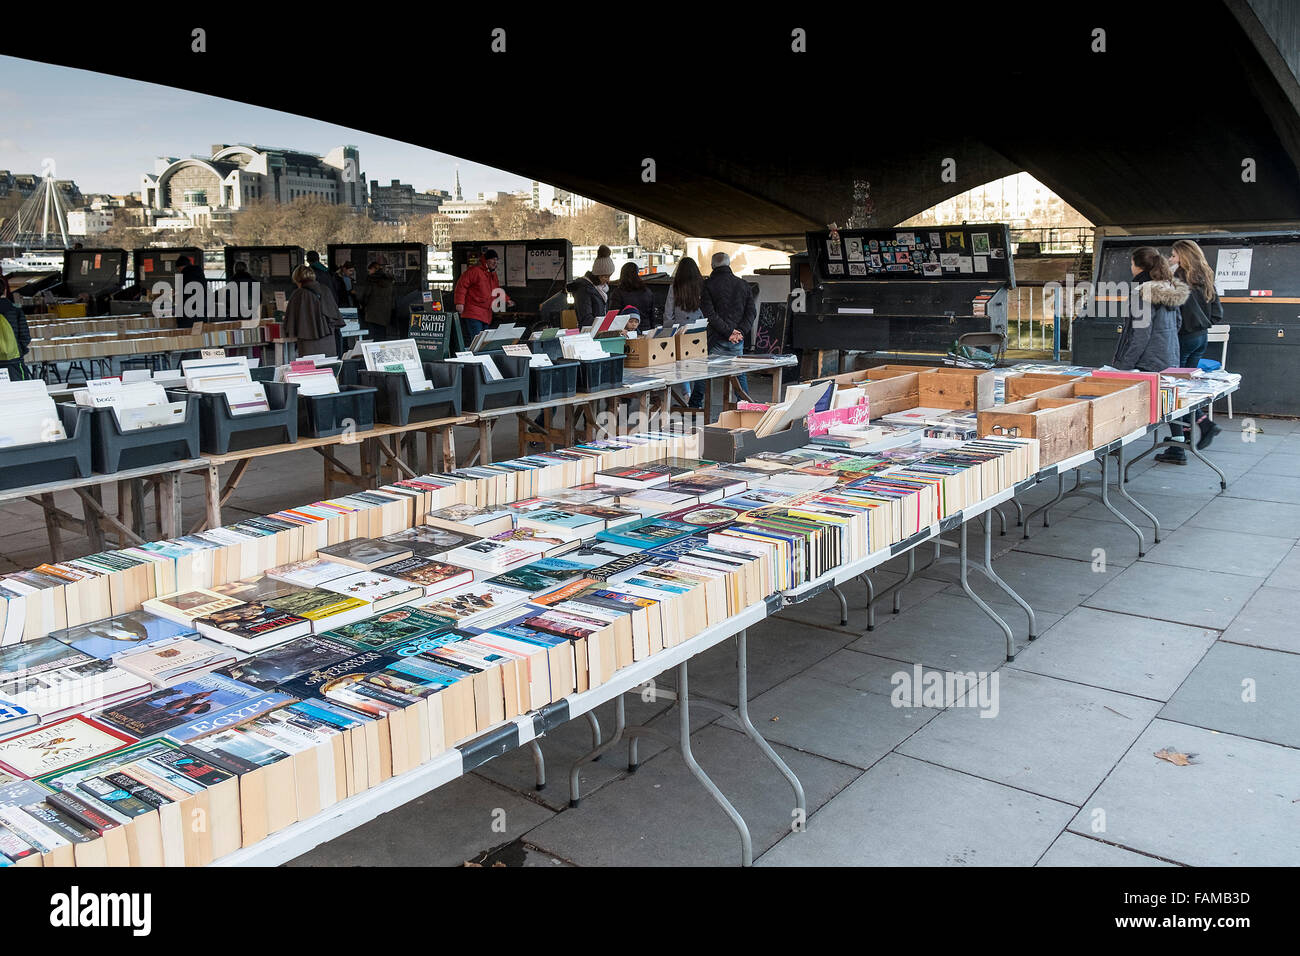 Le marché du livre sur la rive sud de Londres. Banque D'Images